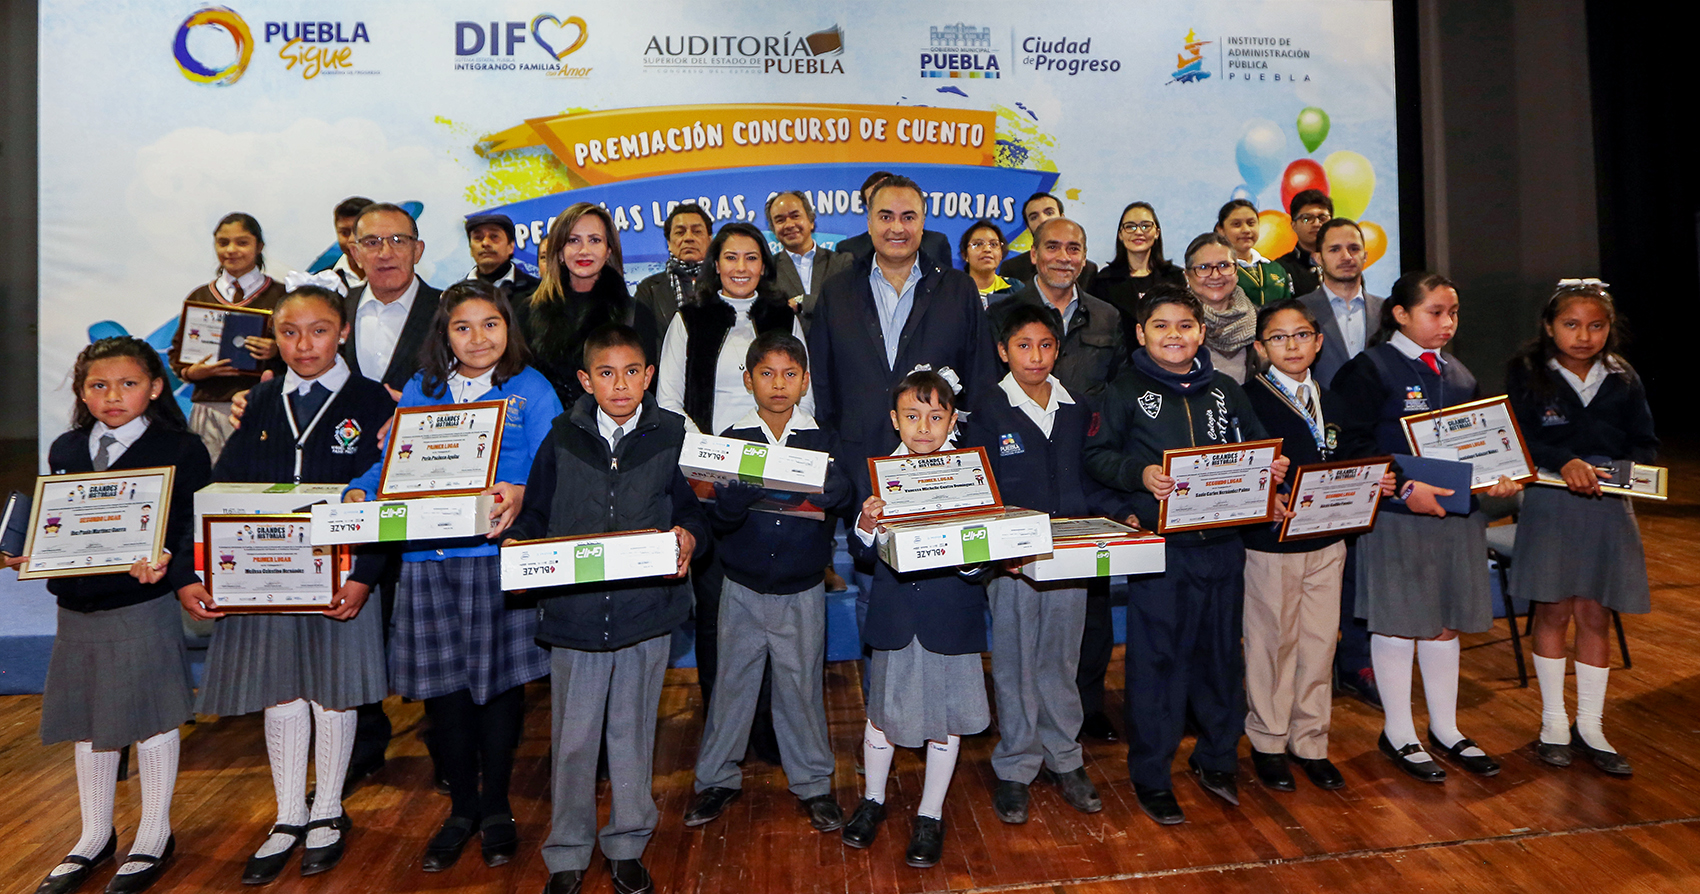 Auditoría Puebla premia a ganadores de concurso de cuento